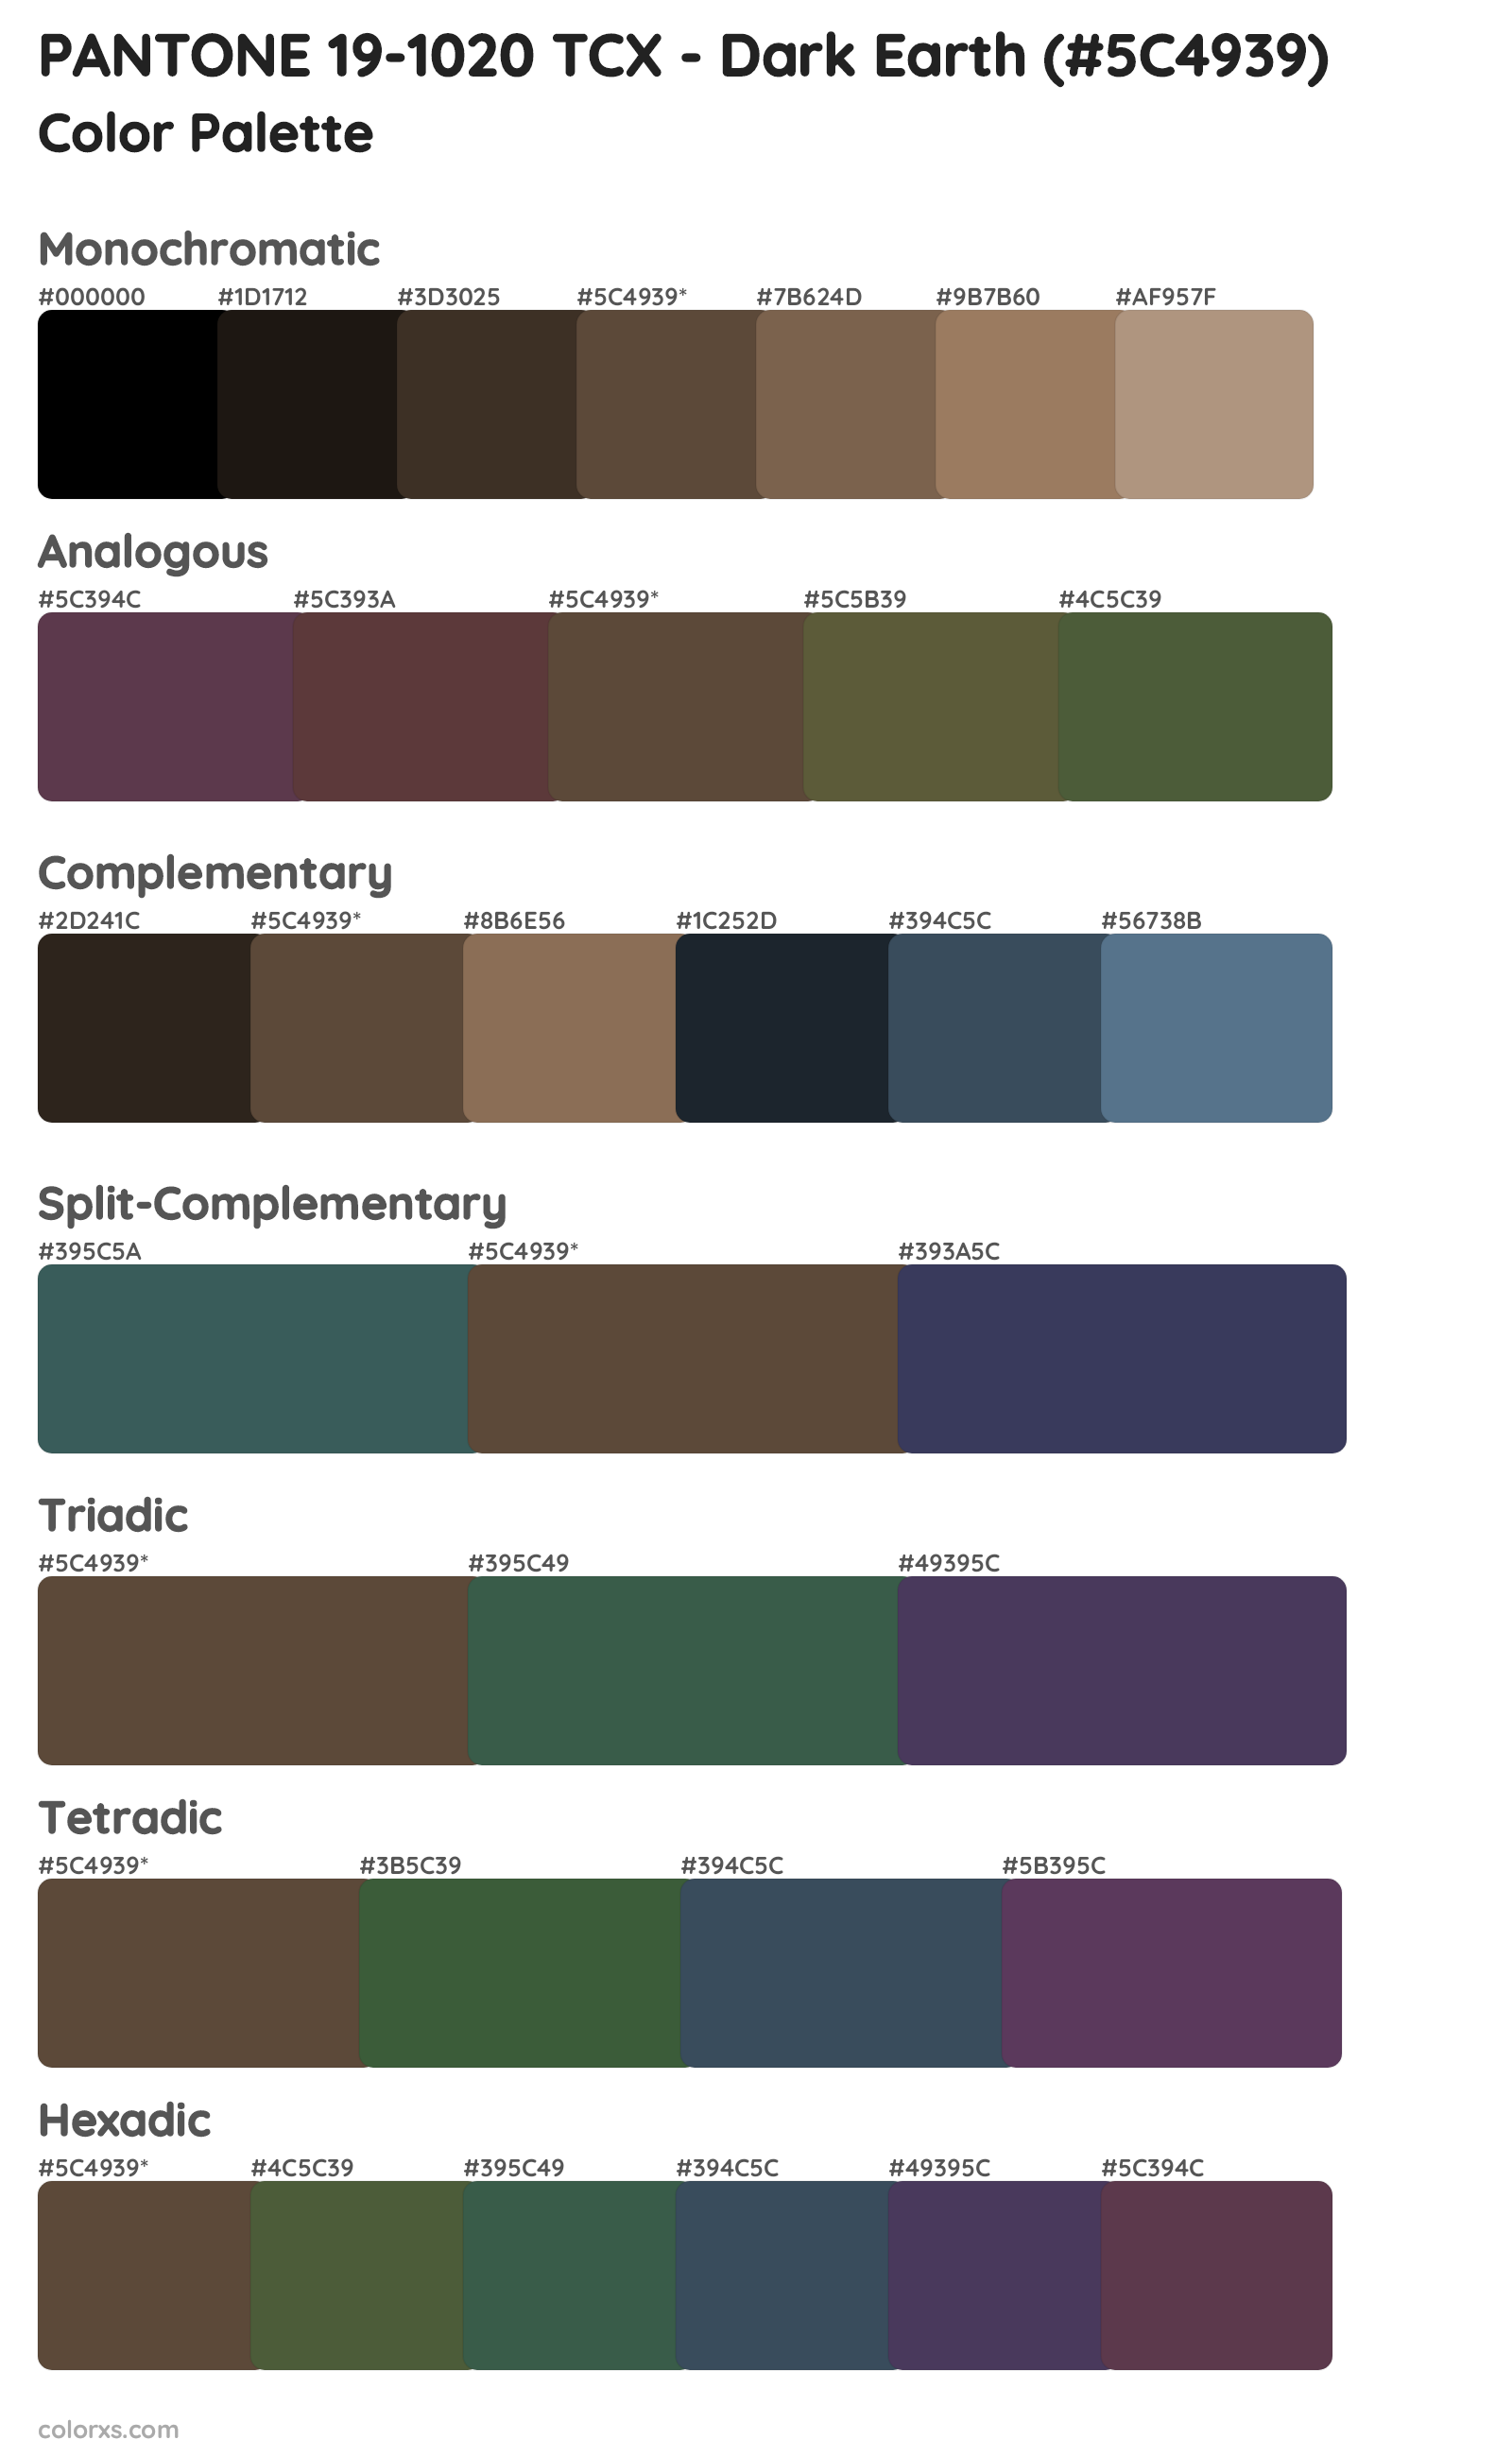 PANTONE 19-1020 TCX - Dark Earth Color Scheme Palettes